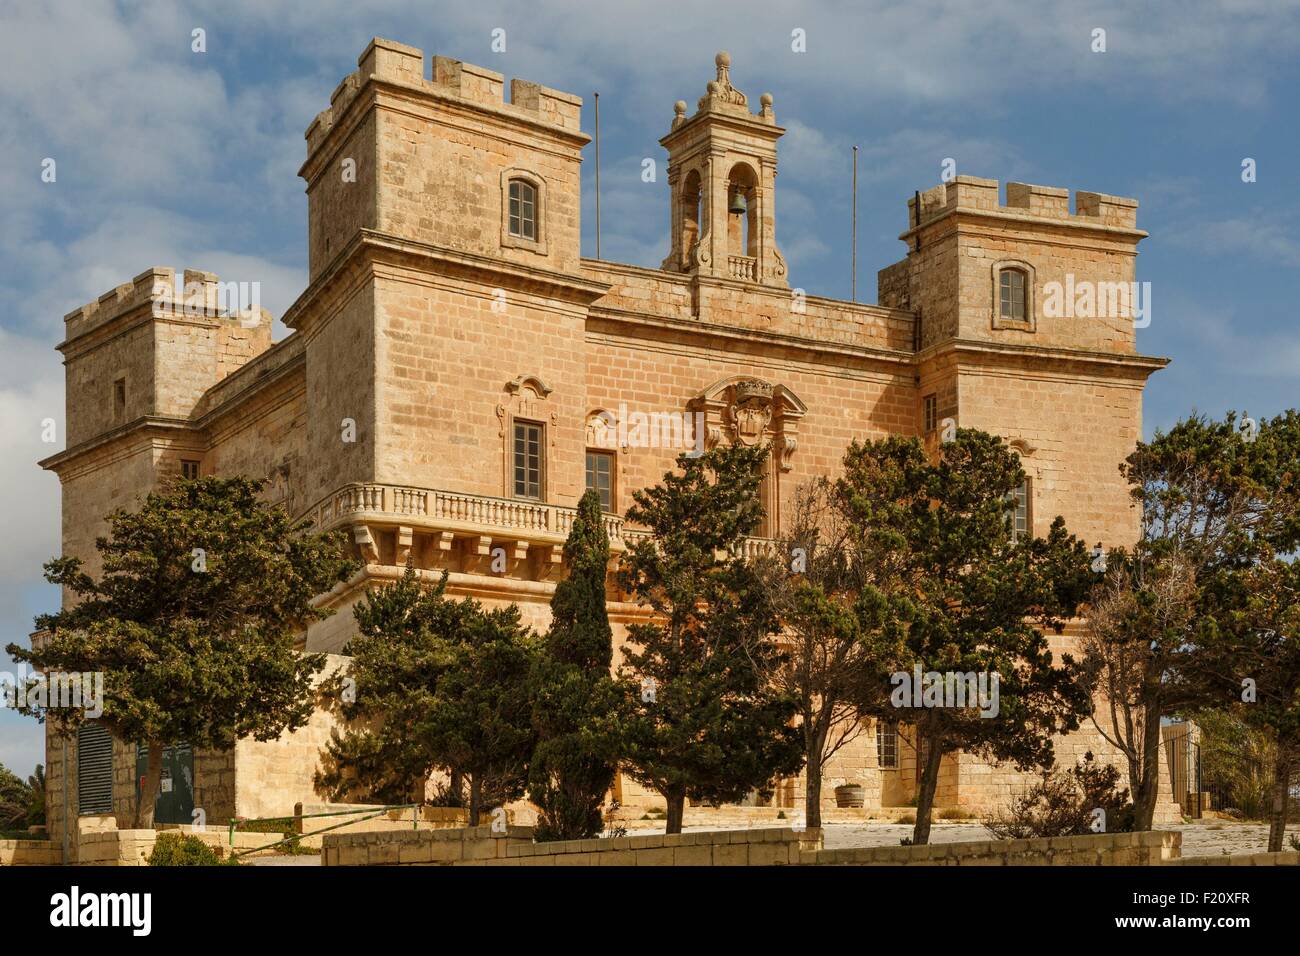 Malta, Mellieha, Selmun Palace, Vista exterior de un castillo de piedra neo-clásico Foto de stock